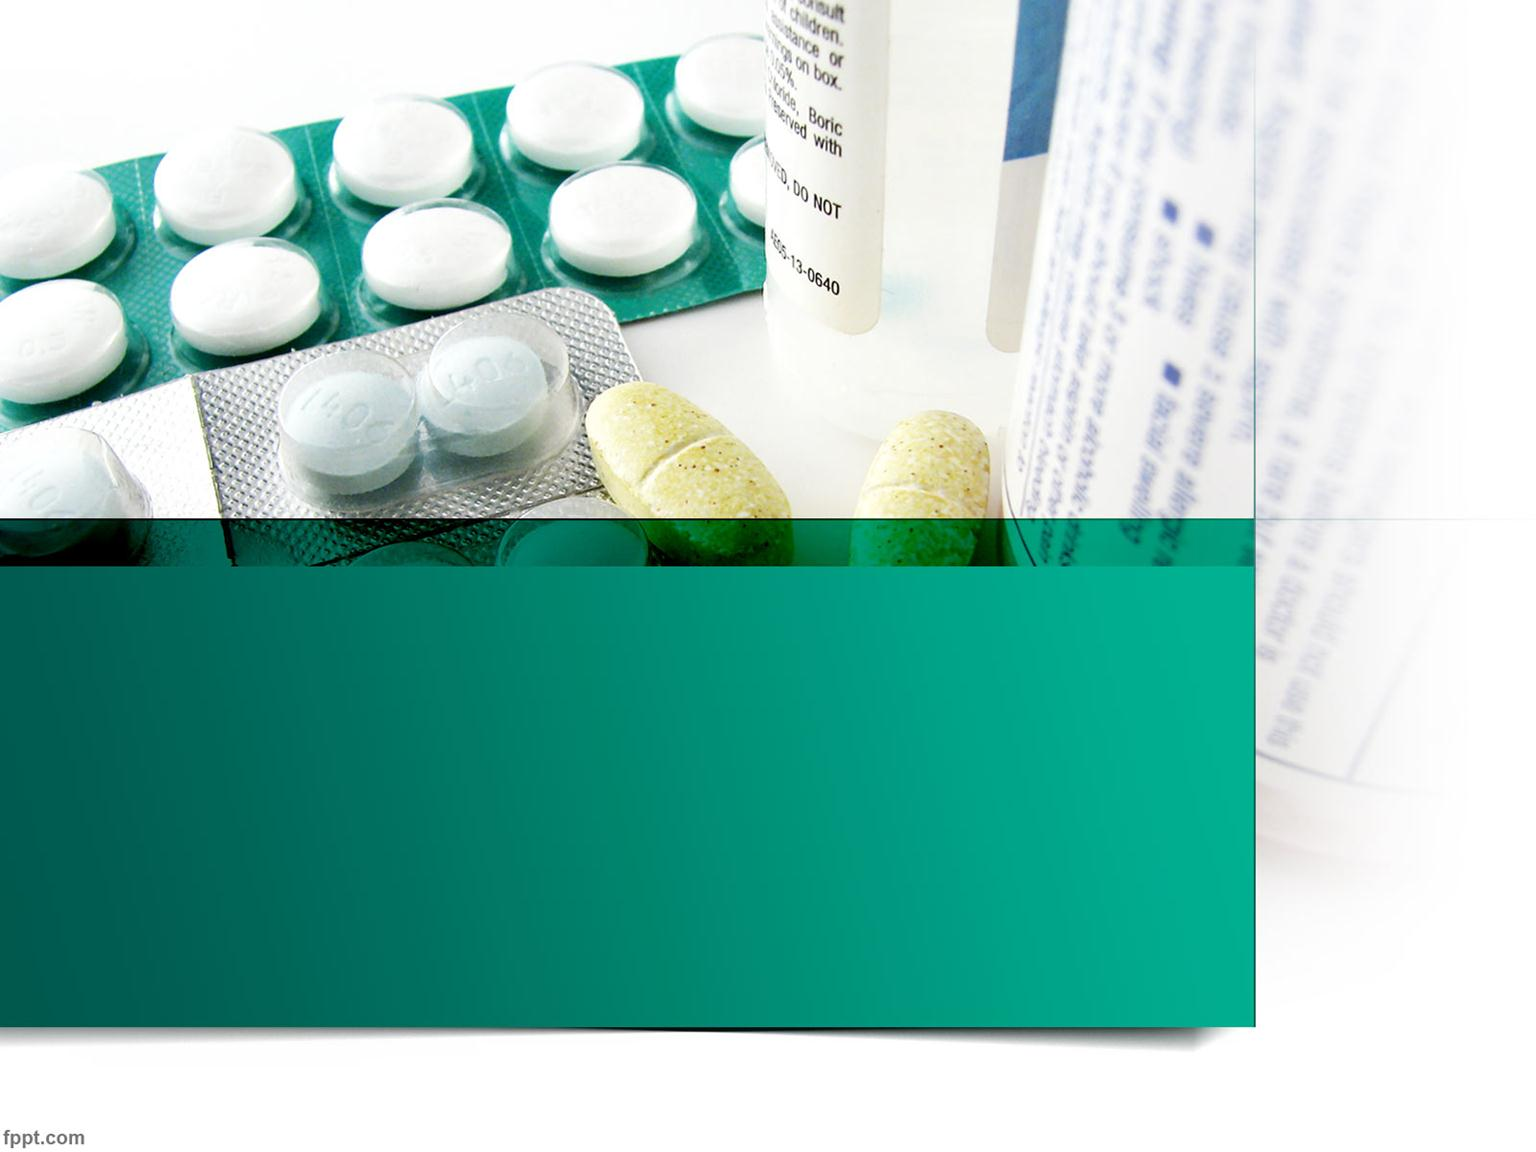 Experiencias en la regulación de precios de medicamentos en países de américa latina y